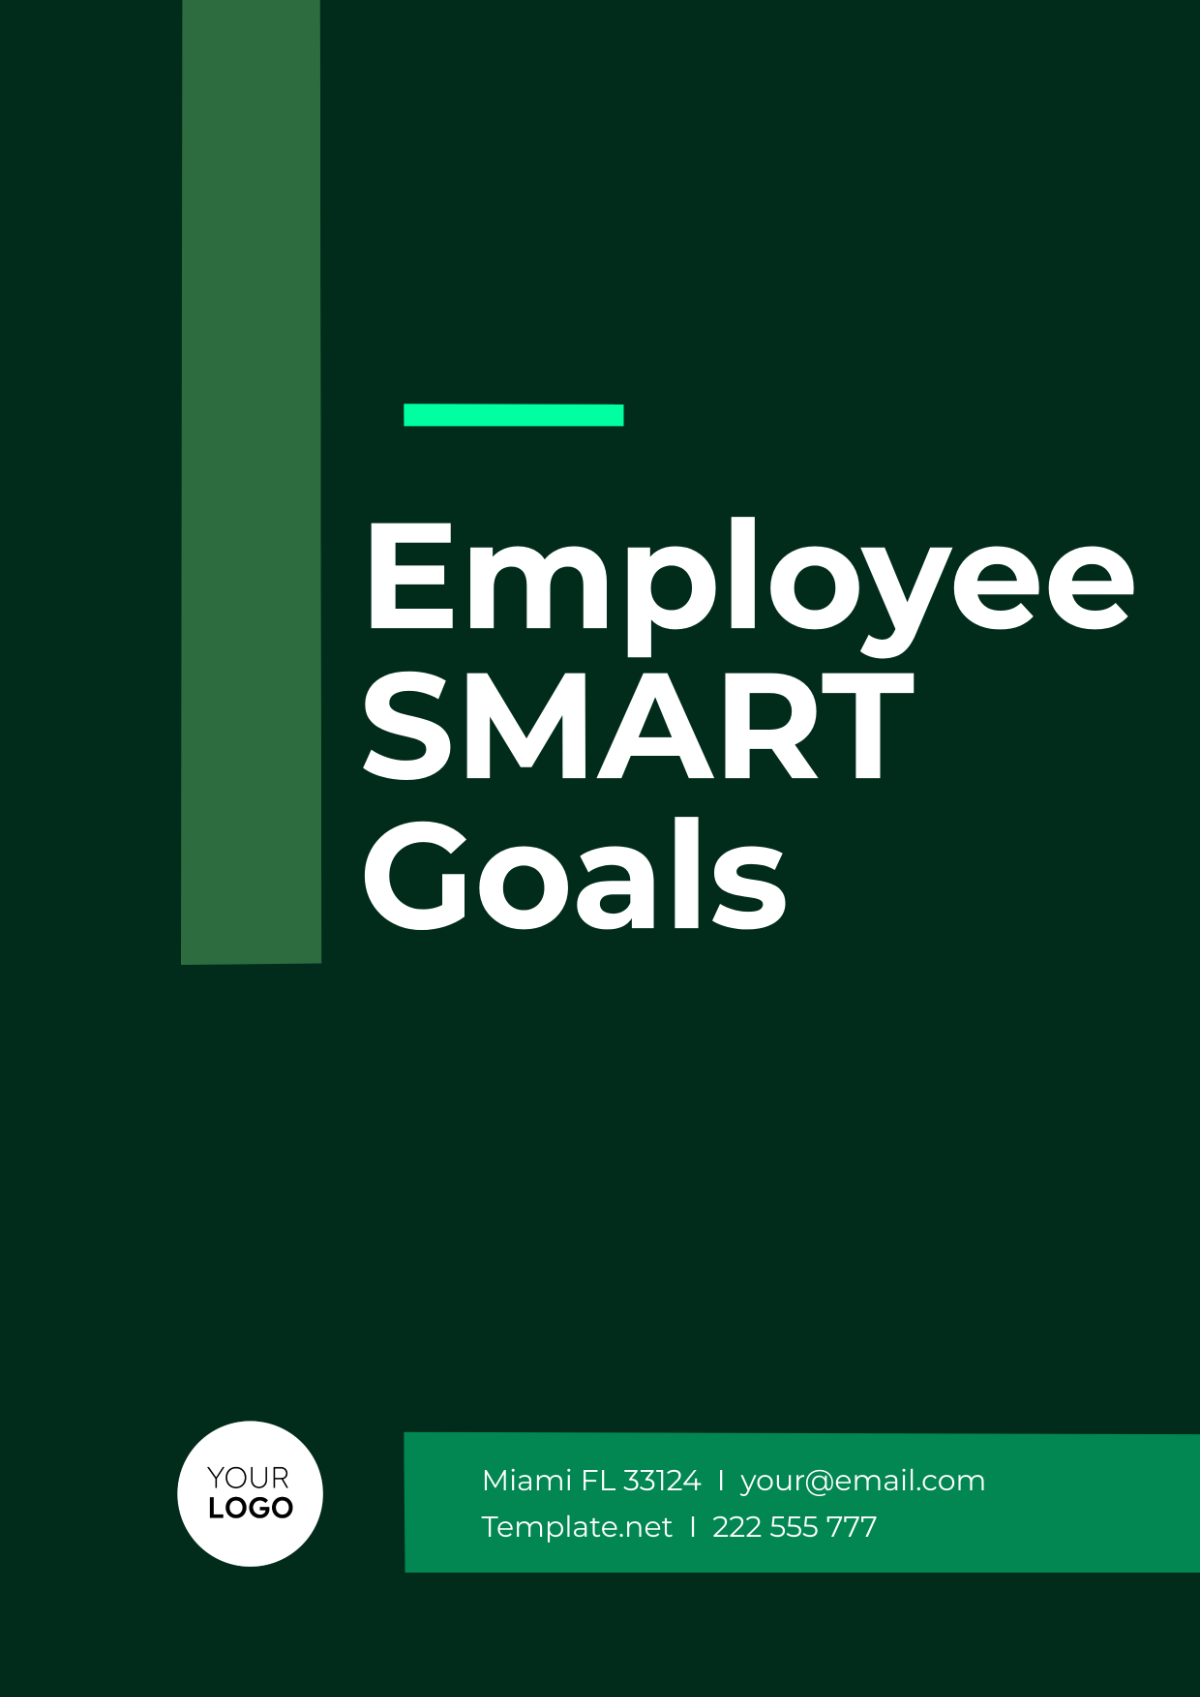 Employee SMART Goals Template